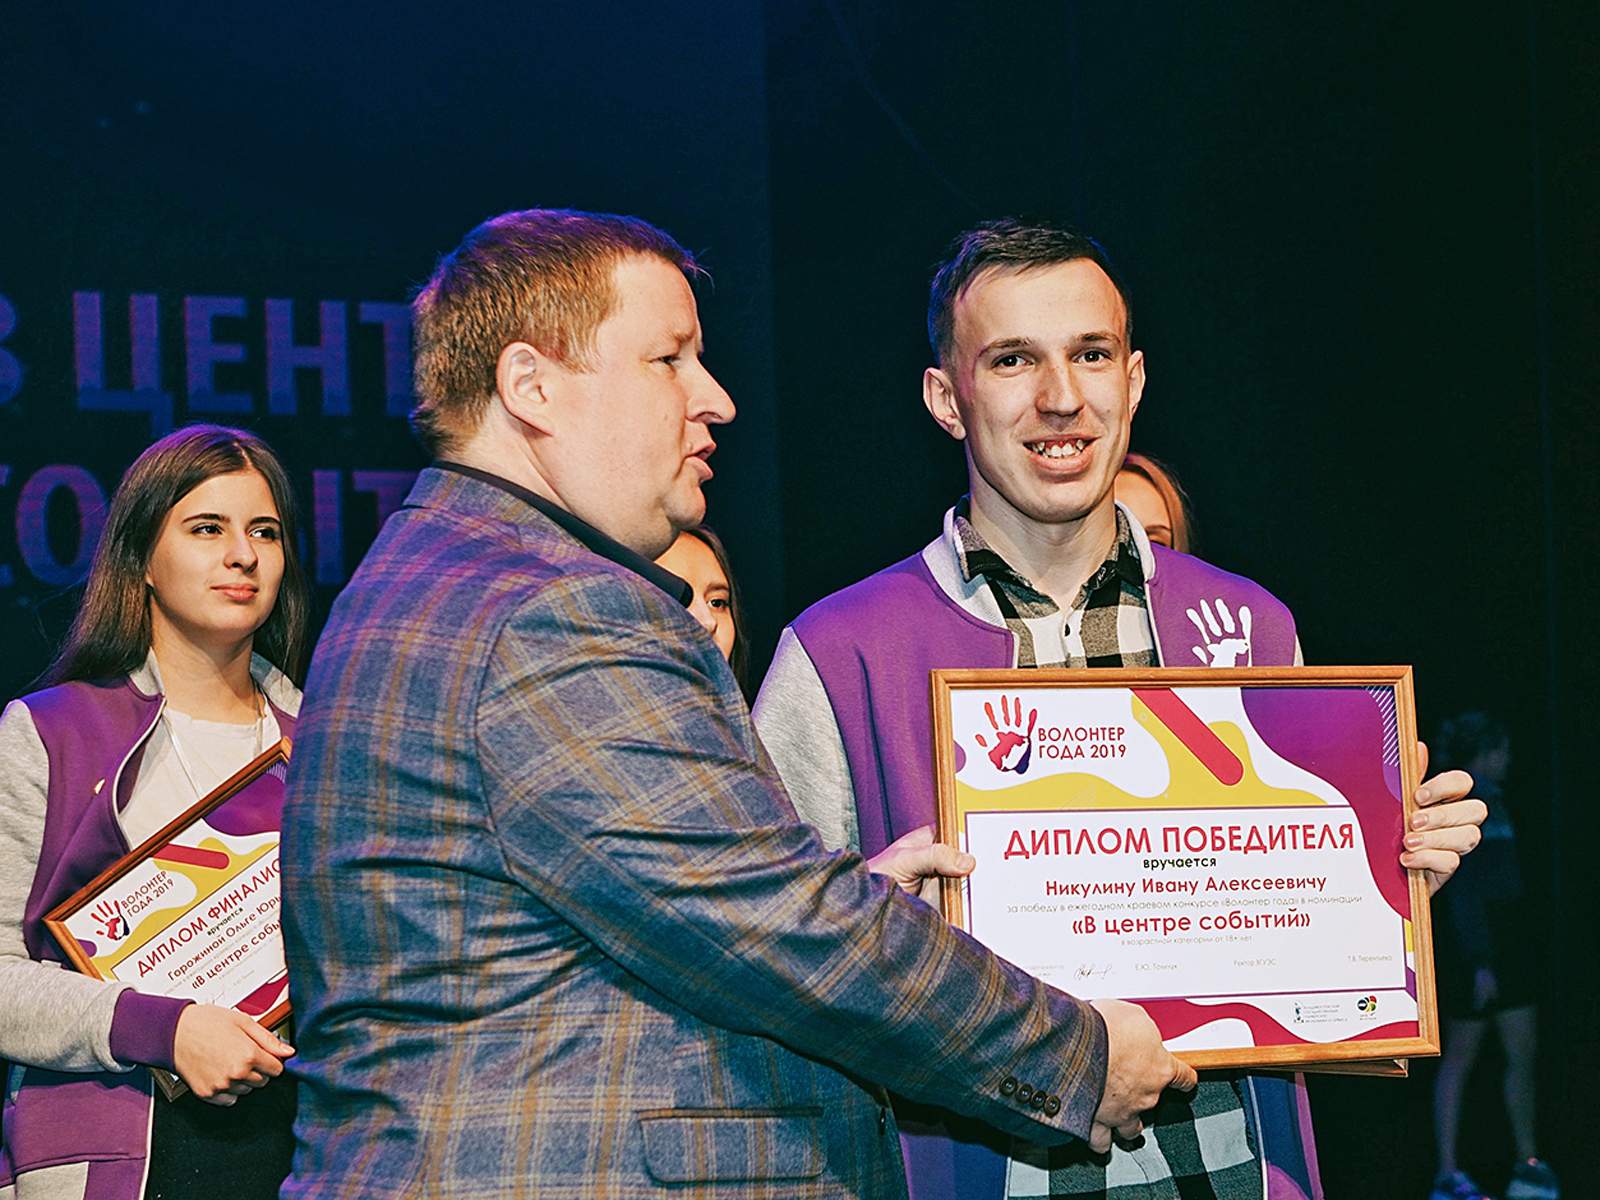 Студент ВГУЭС — победитель VI ежегодного краевого конкурса «Волонтер года 2019»